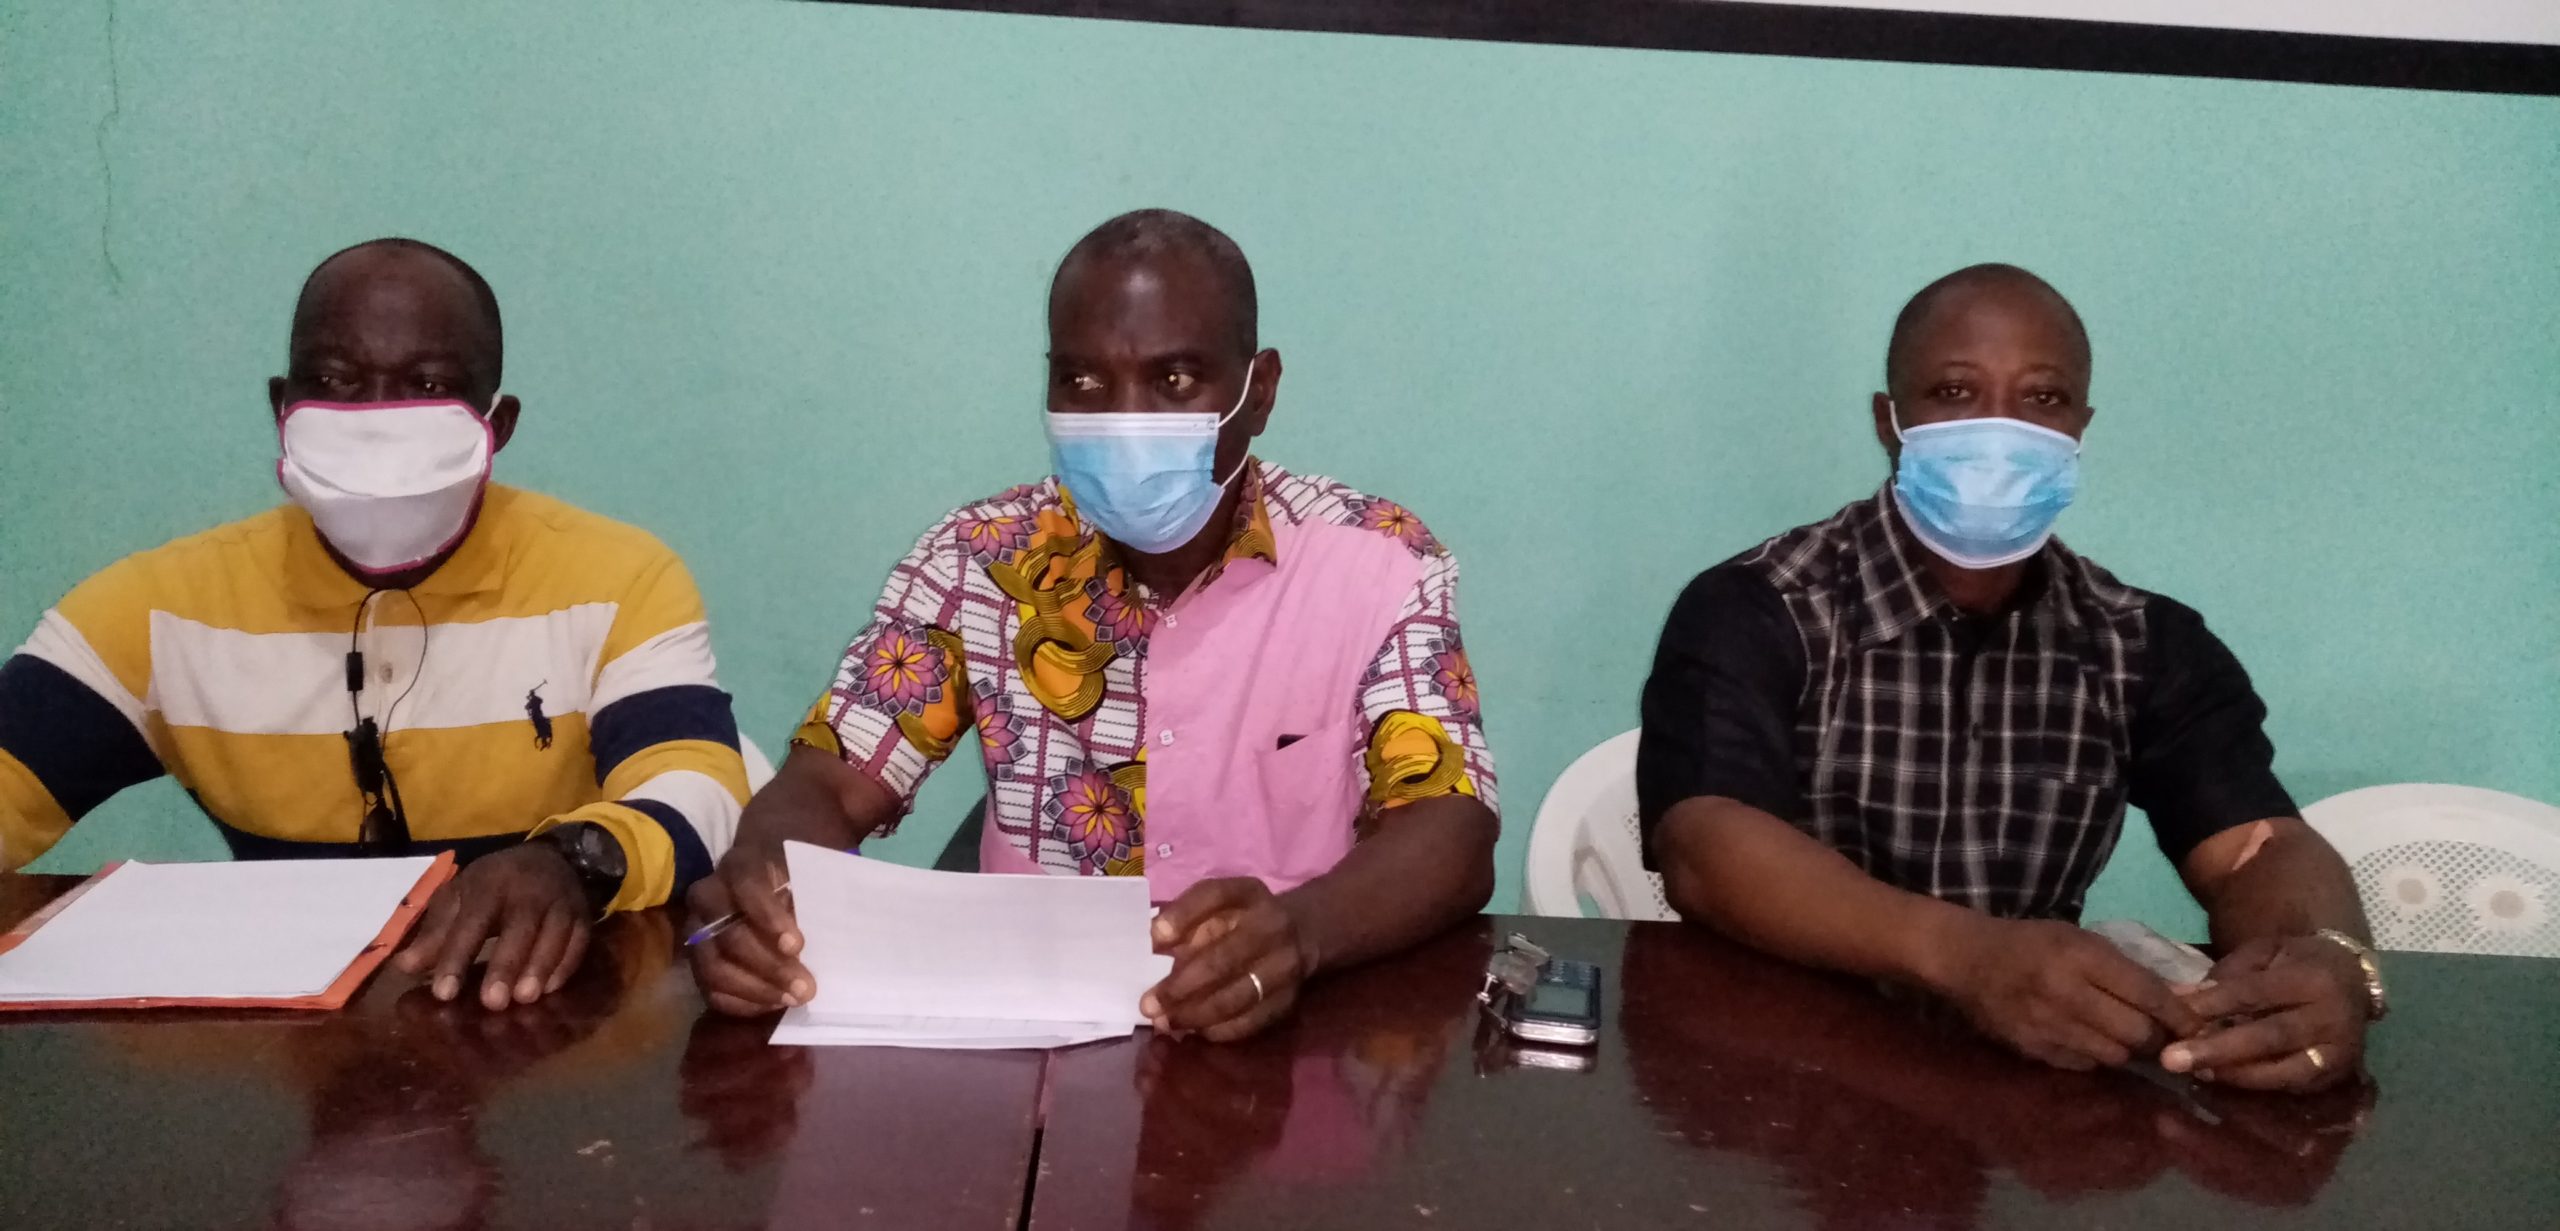 Tonkpi/ Les ex militants UDPCI à propos du décès d'Amadou Gon : "Nous sommes affligés, nous restons dignes et mobilisés dans la douleur"